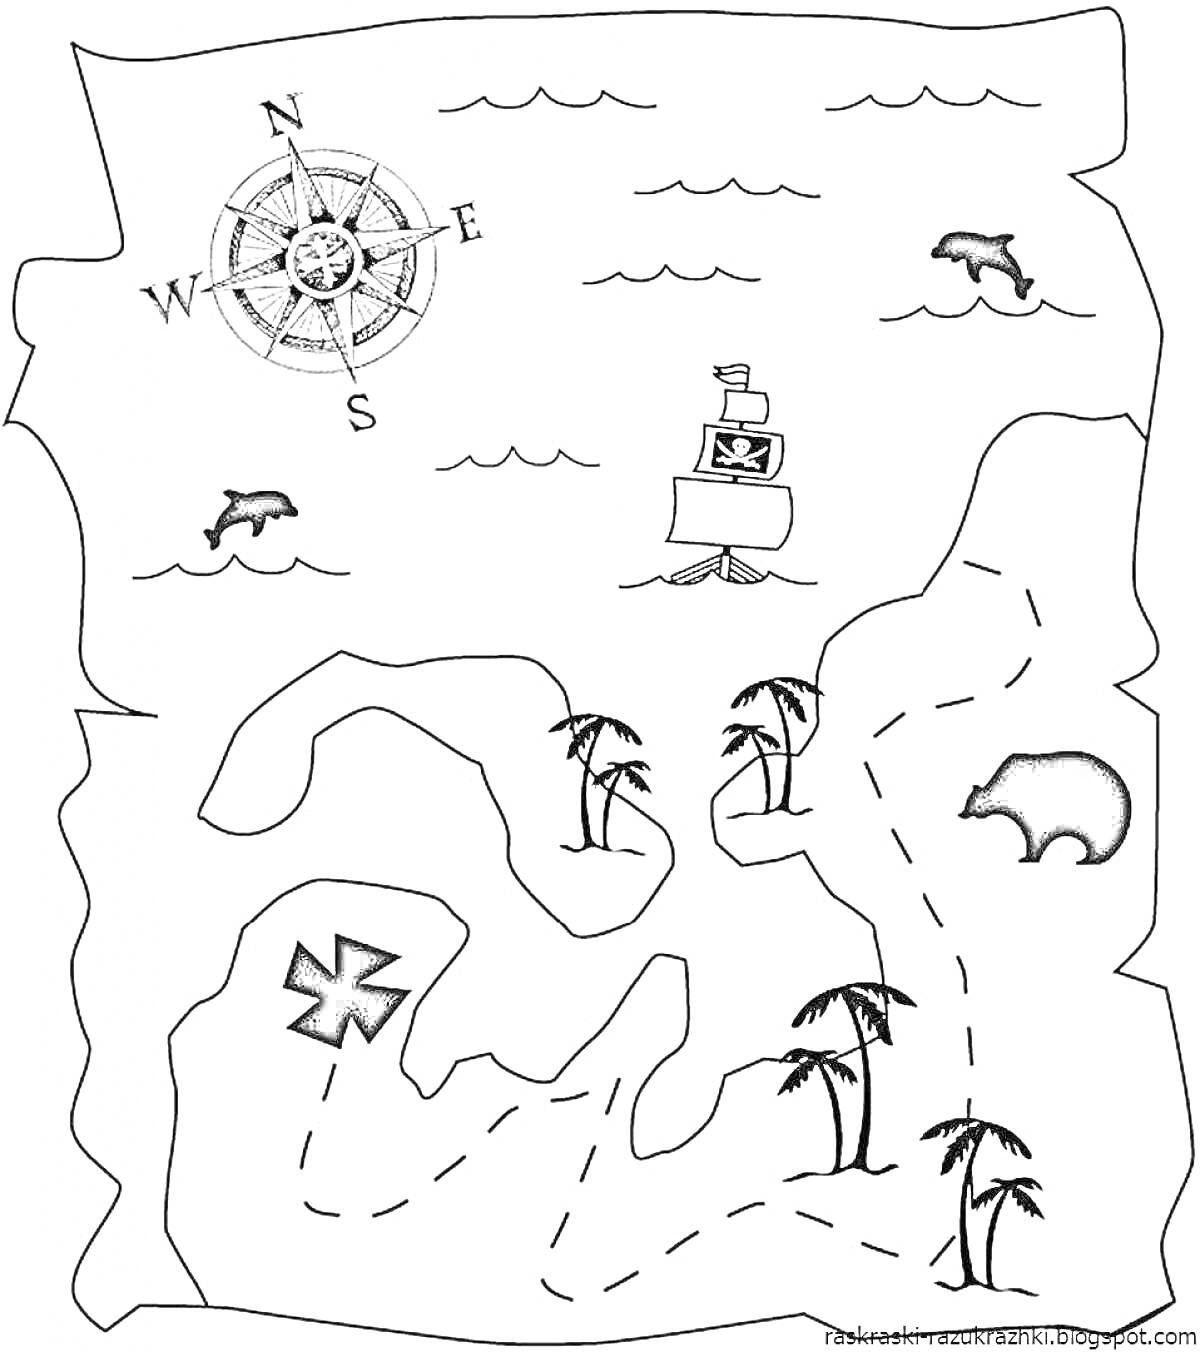 На раскраске изображено: Карта сокровищ, Компас, Пиратский корабль, Пальмы, Крест, Медведь, Дельфины, Приключения, Море, Остров, Океаны, Пираты